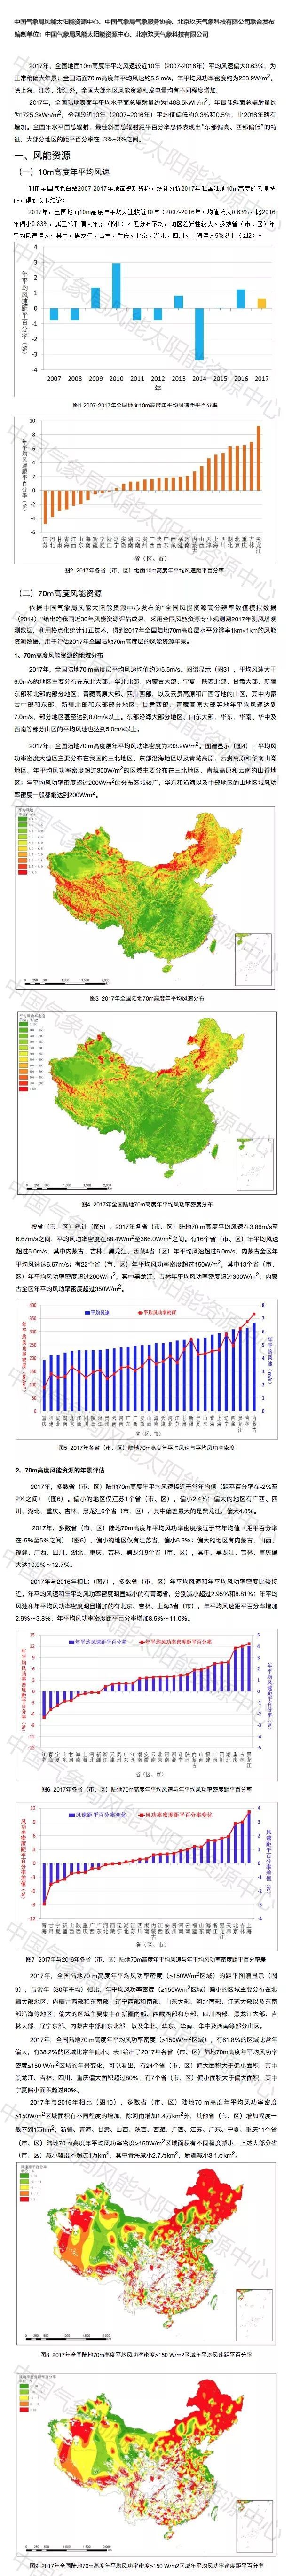 2017年中国风能太阳能资源年景公报